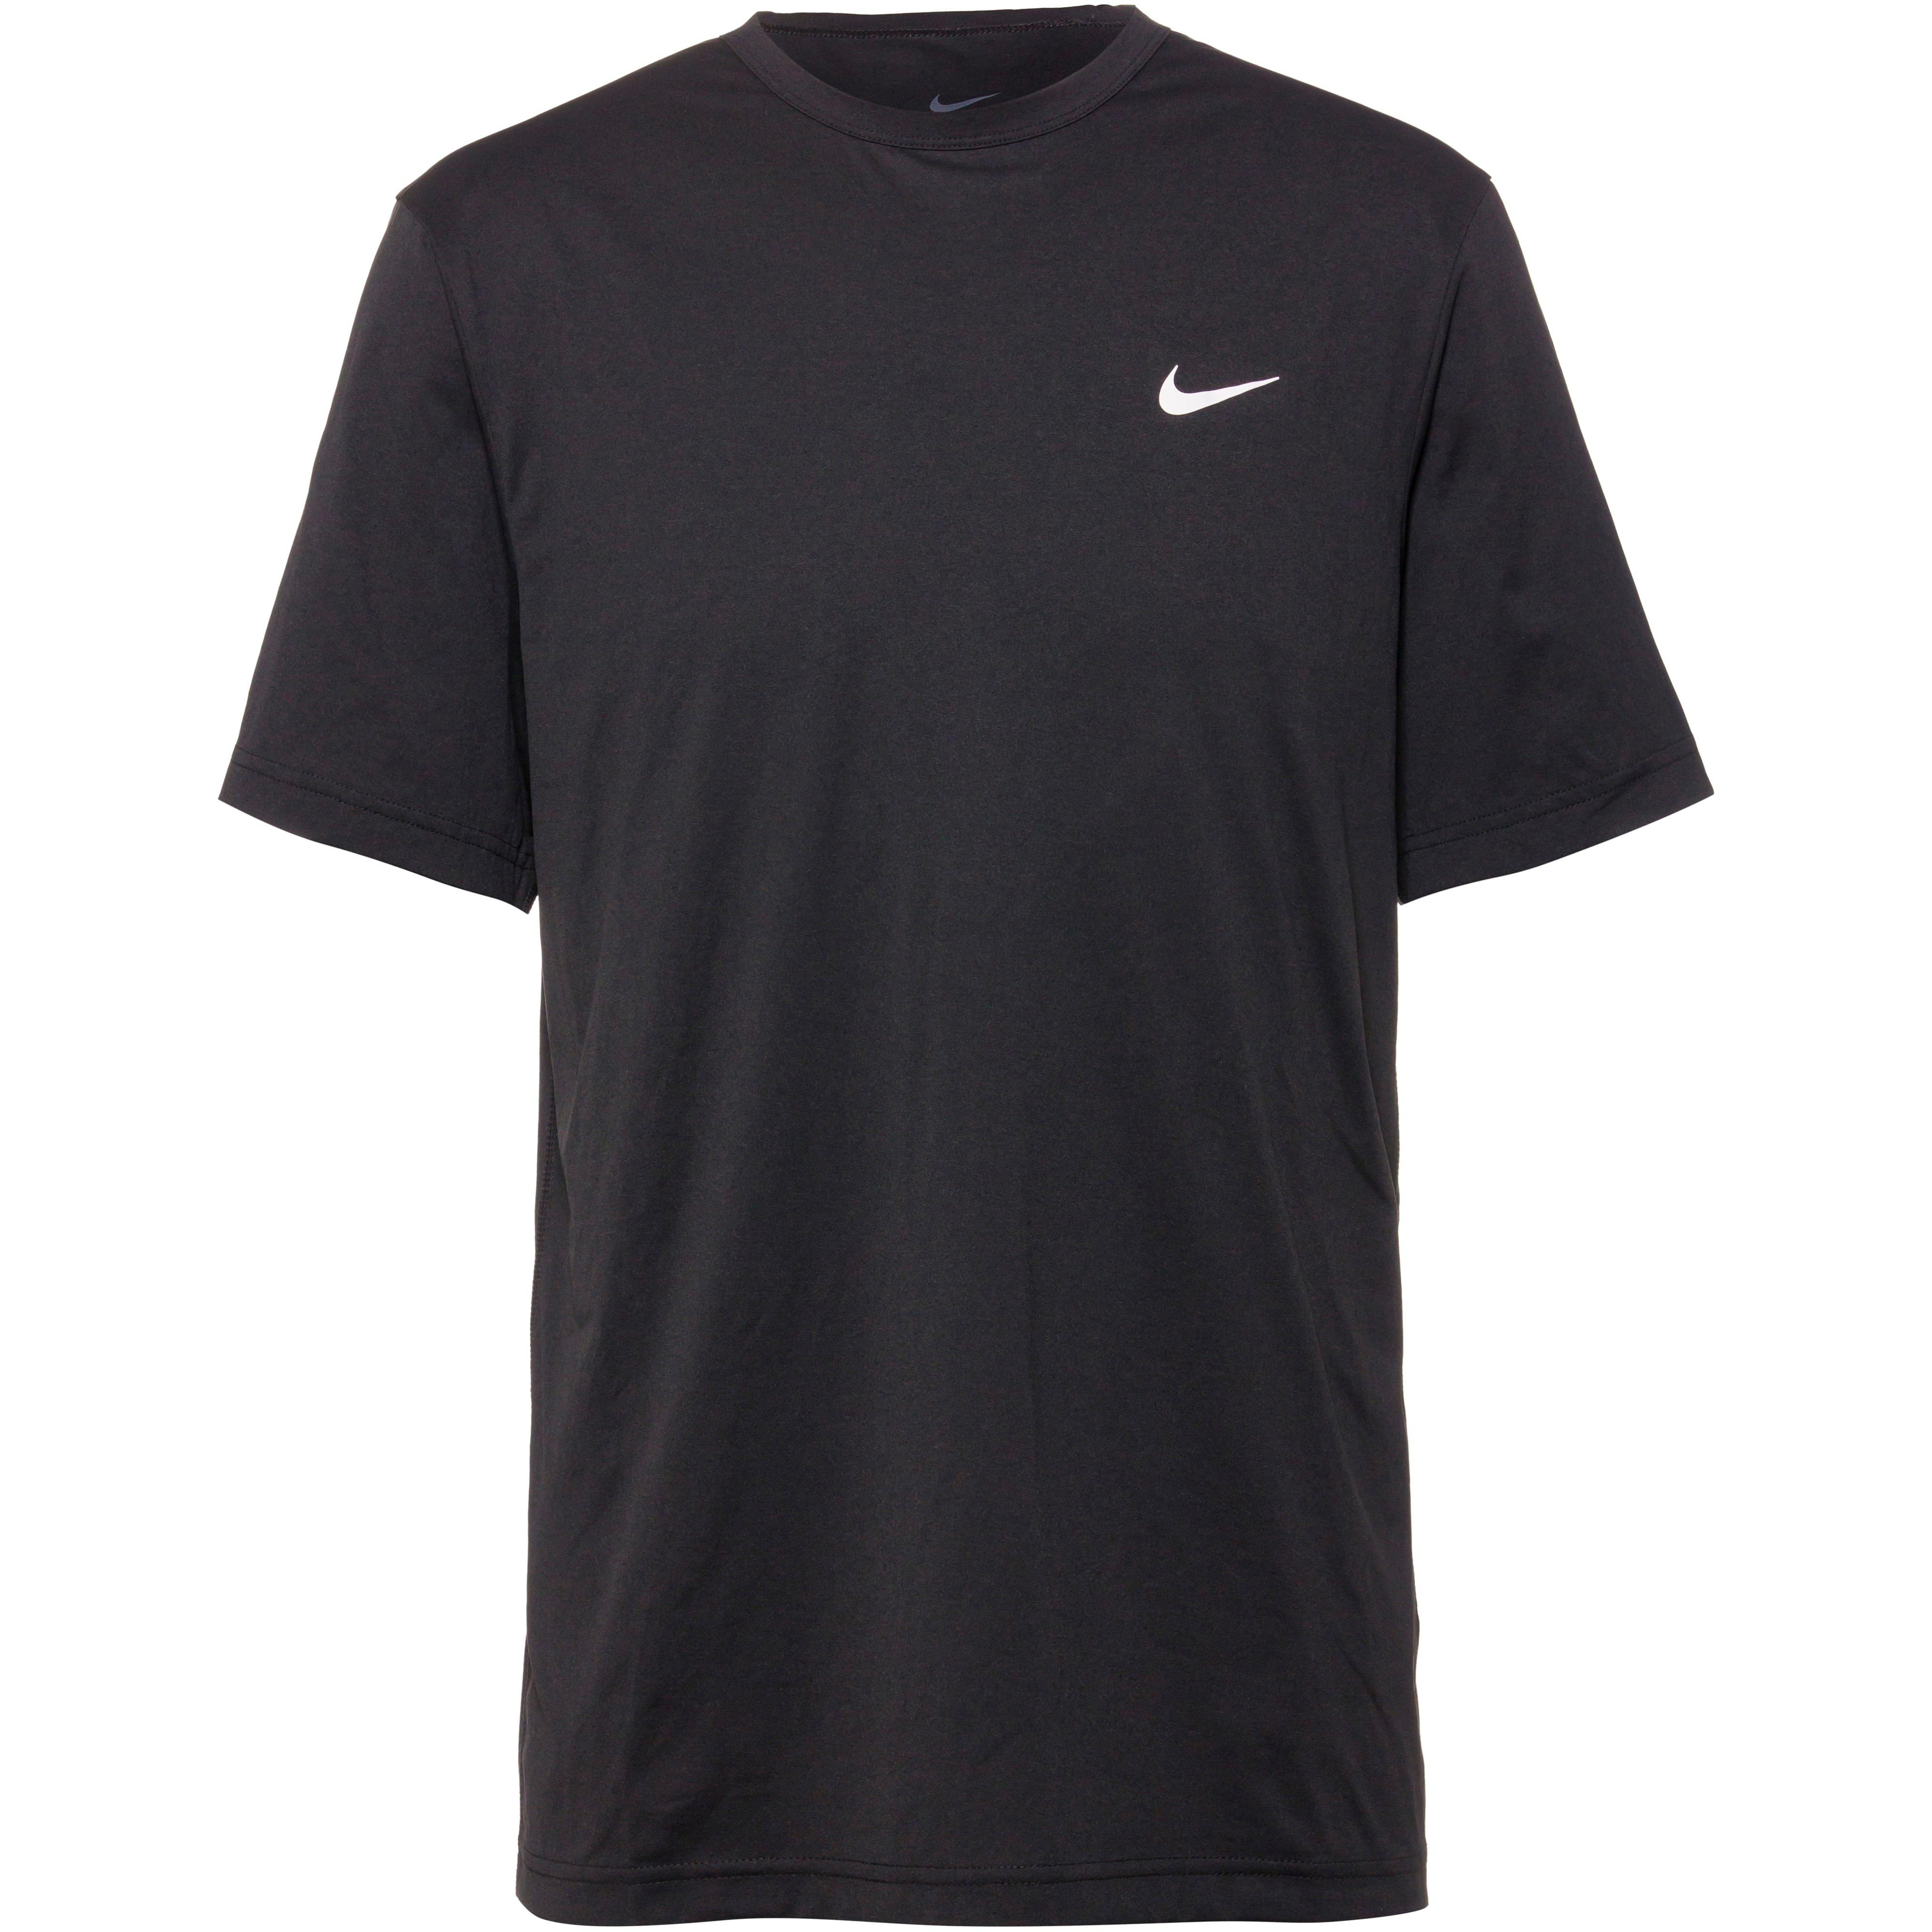 Nike Shirts online SportScheck bei bestellen bequem